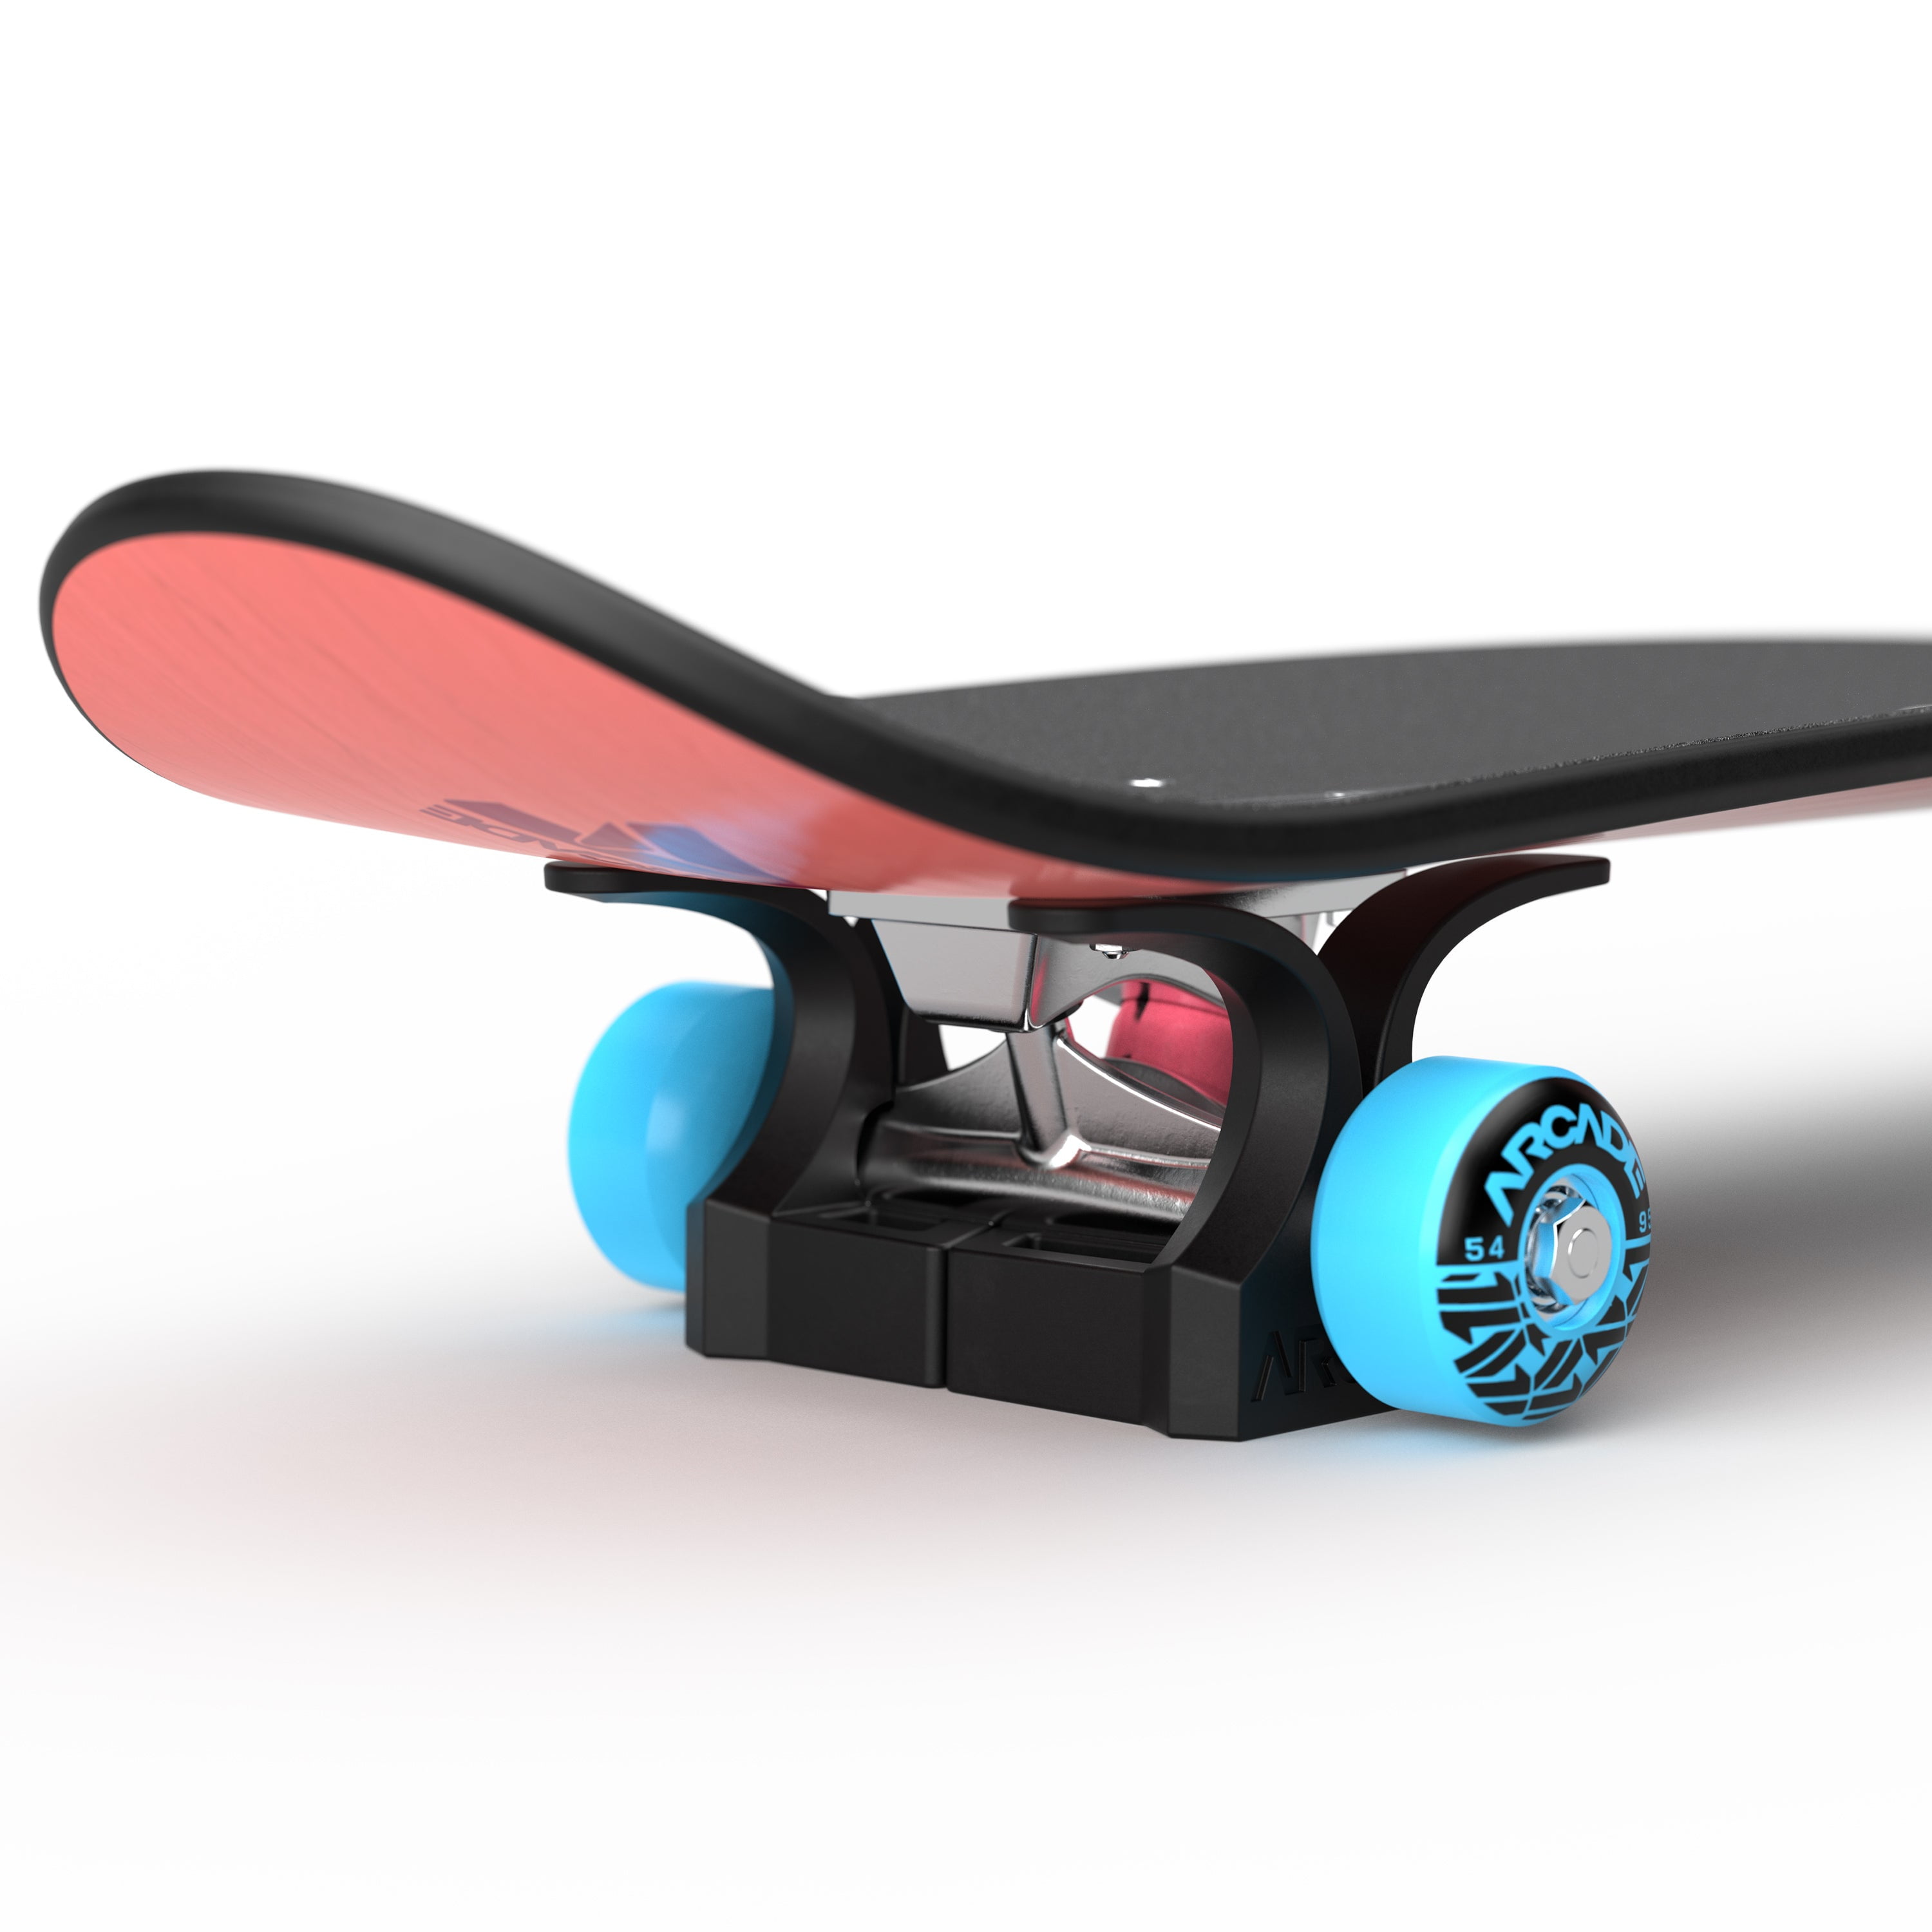 Skateboard Trainers - Skateboarding Skateboard Accessories - Walmart.com